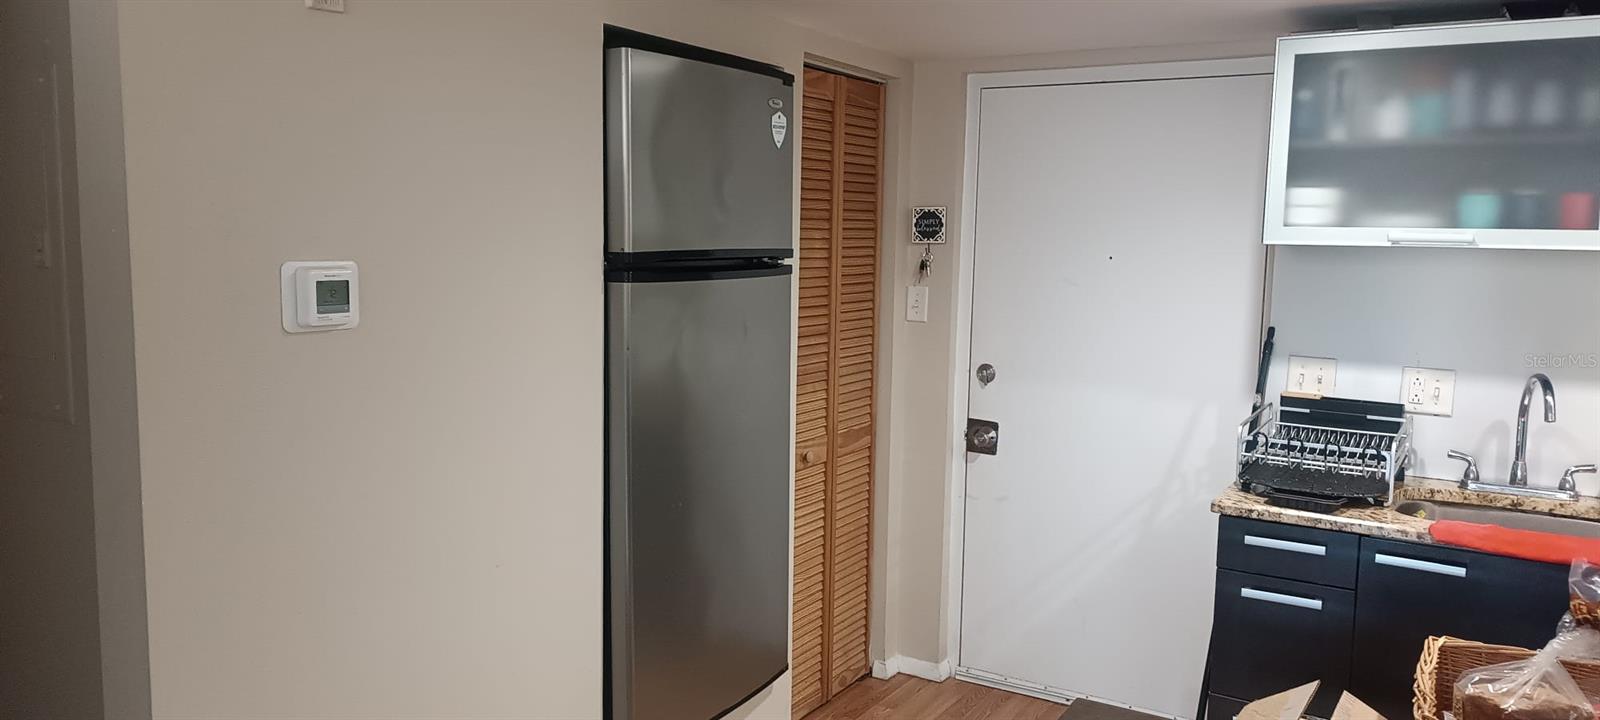 Kitchen / Refrigerator